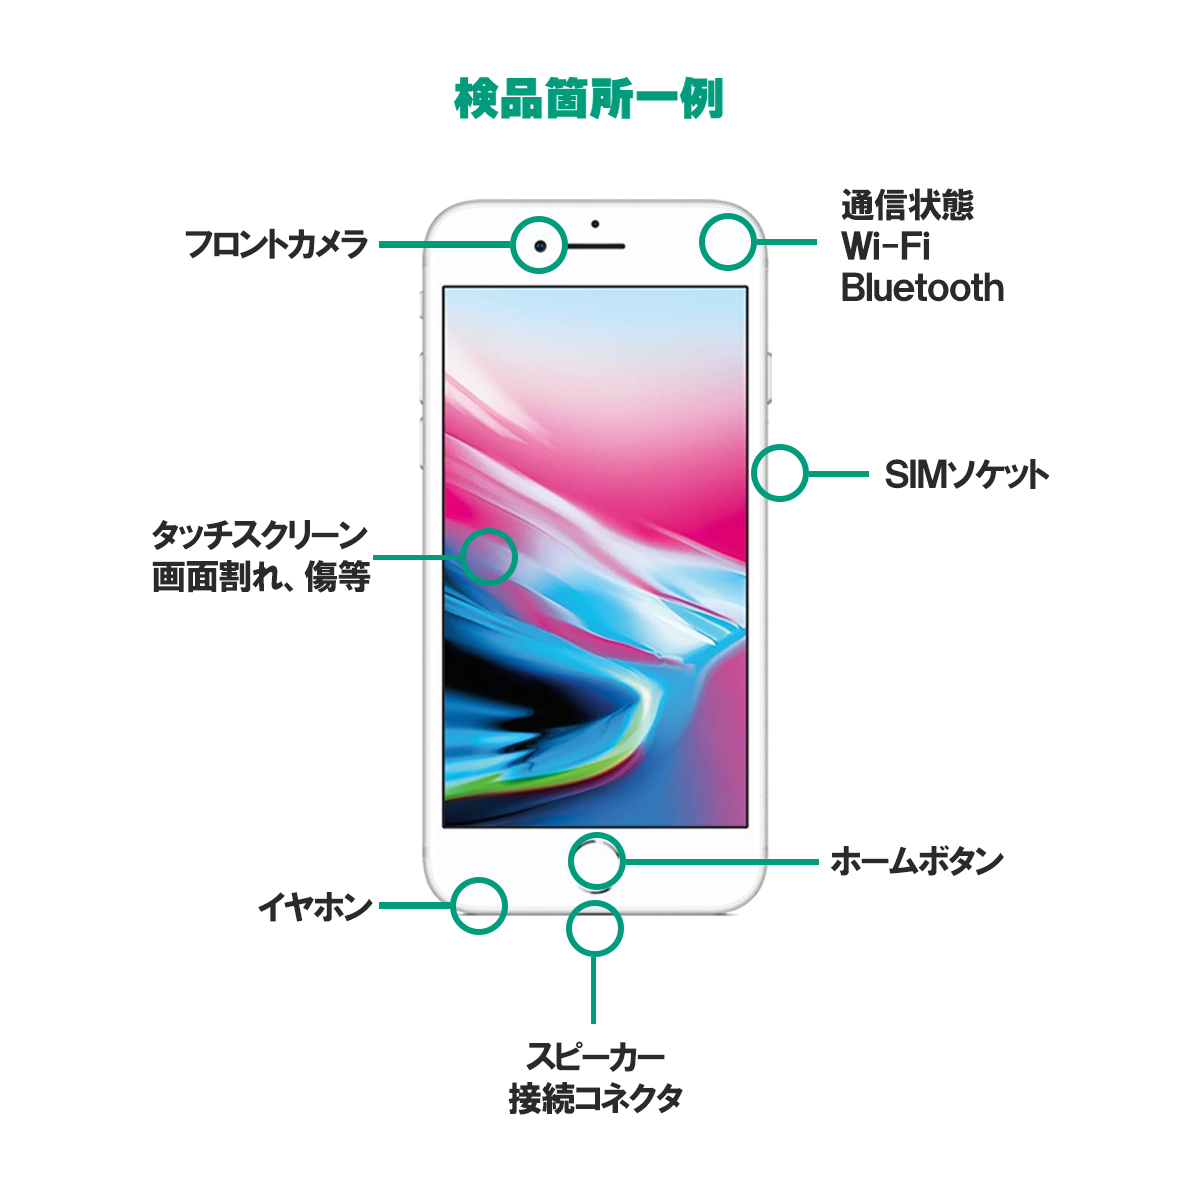 中古Aランク iPhone13 Pro 256GB シエラブルー バッテリー最大容量88 